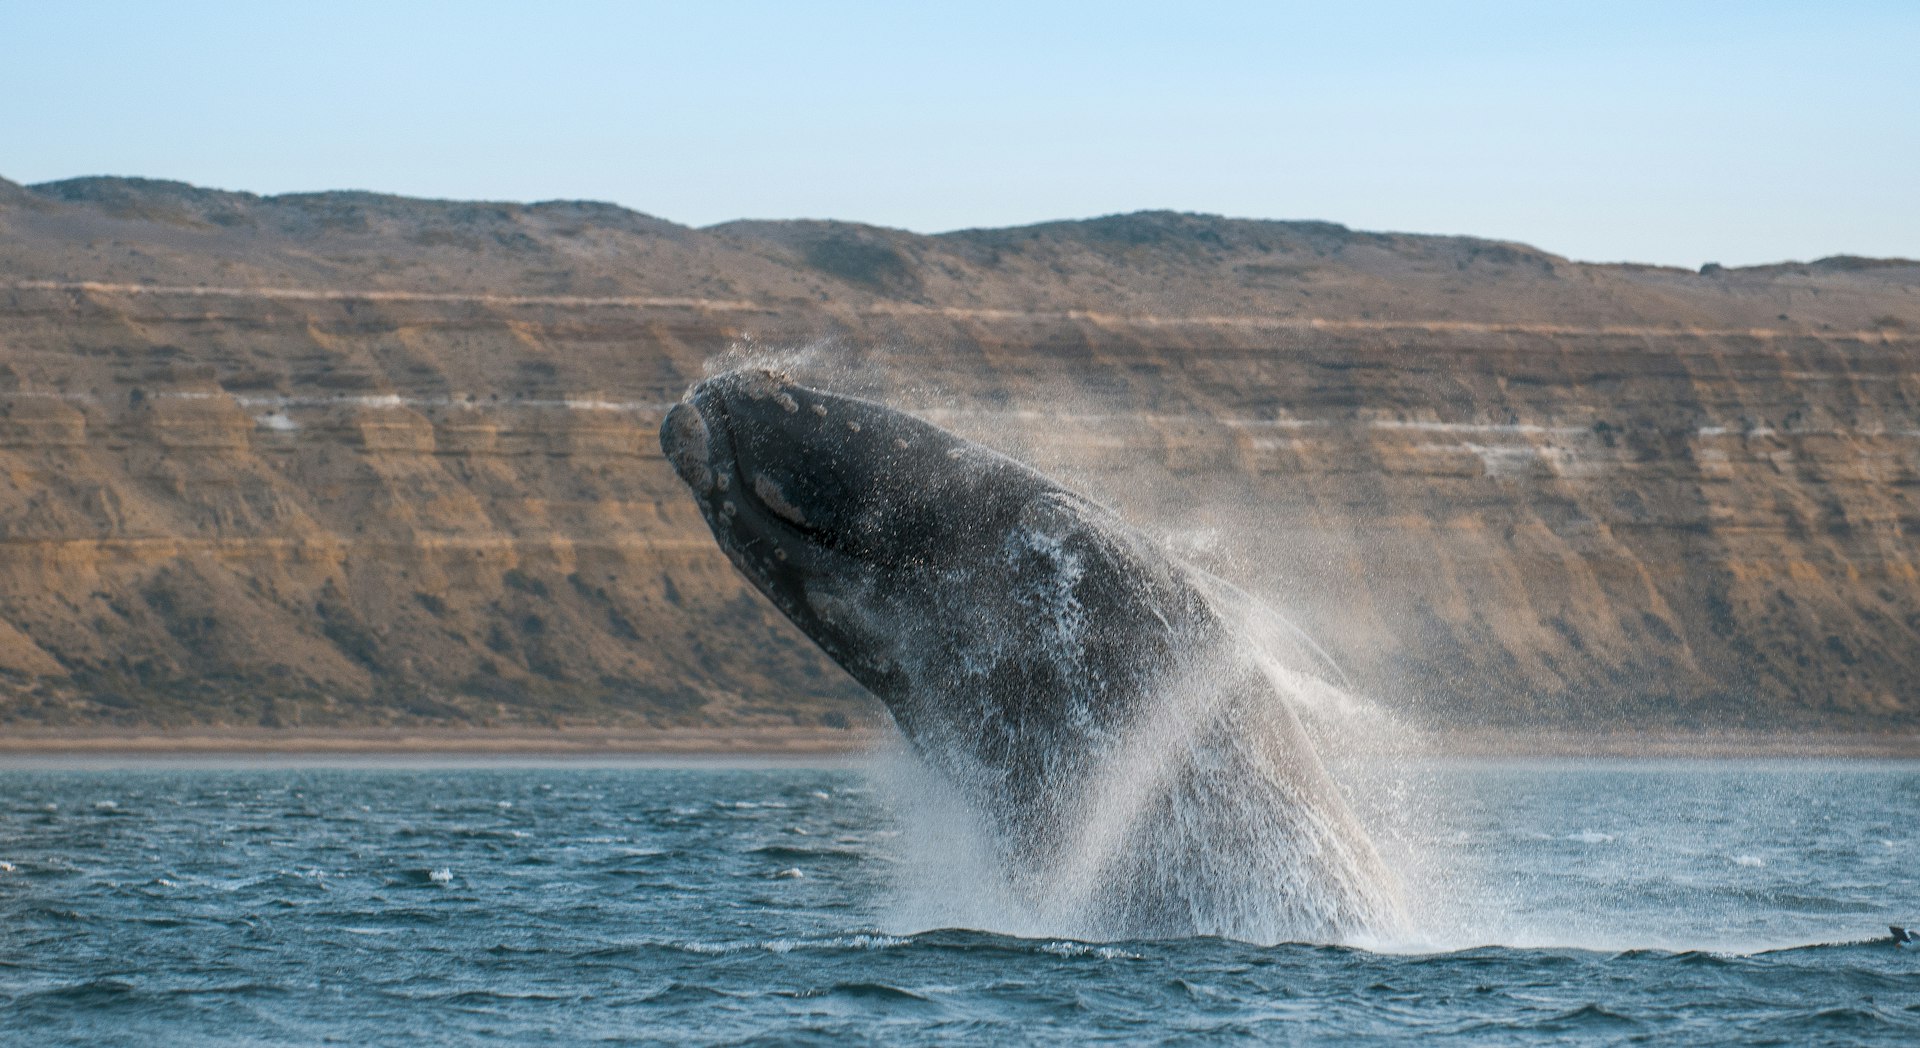 A whale breaches near the coastline